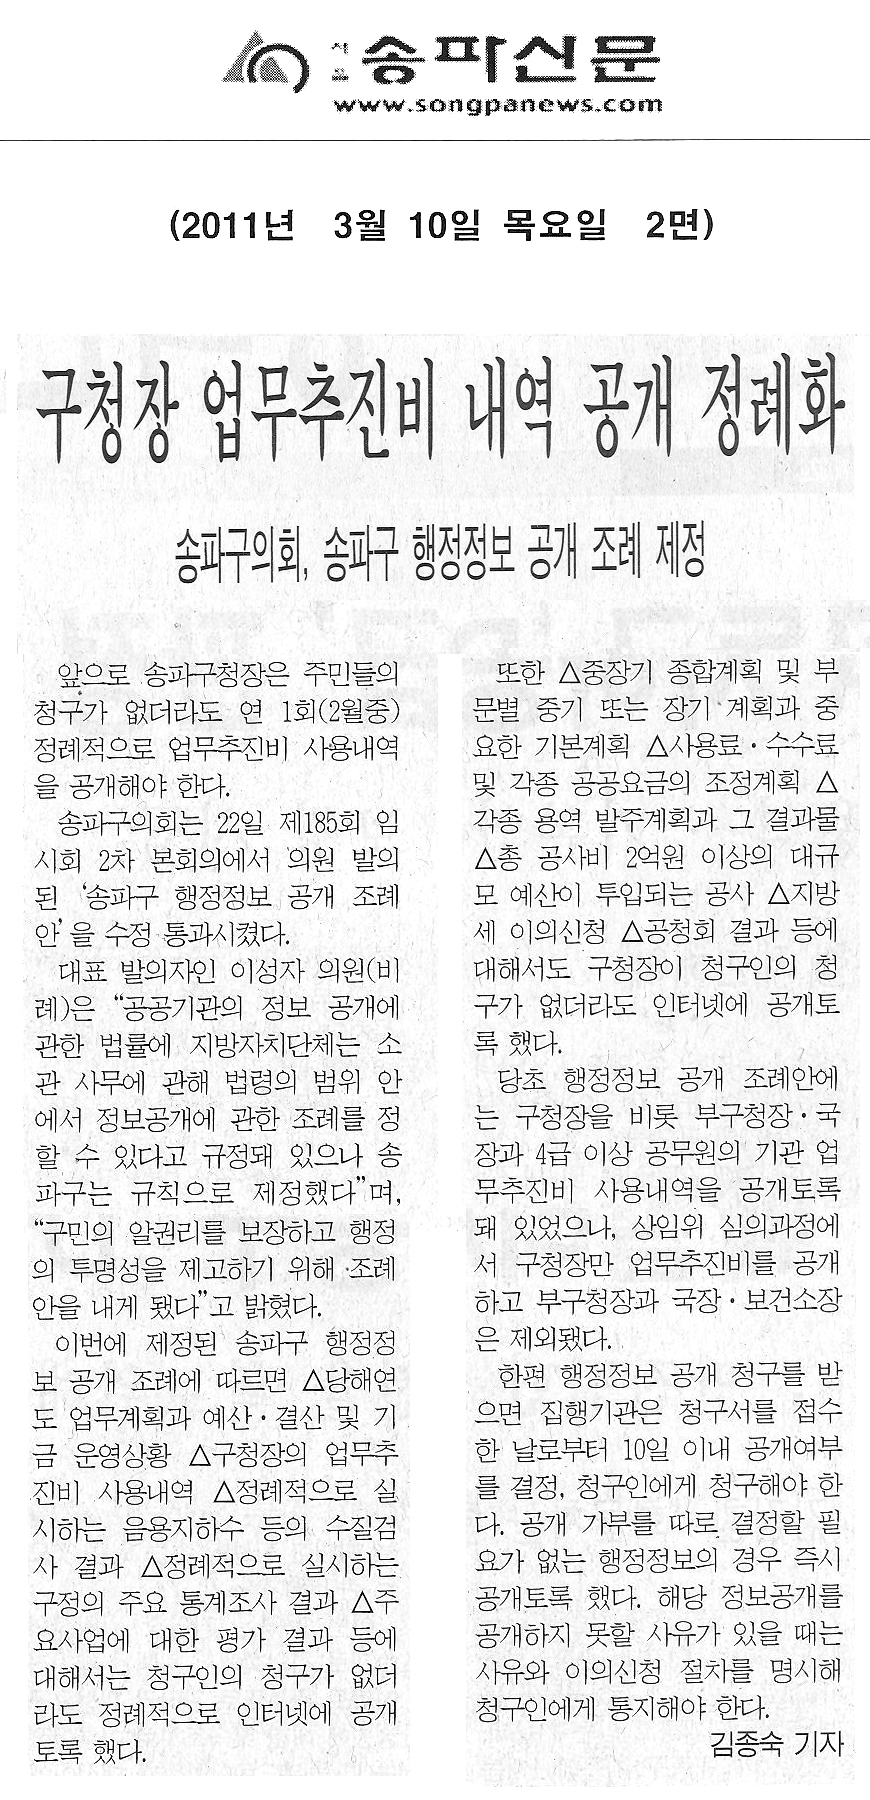 구청장 업무추진비 내역 공개 정례화 [송파신문] - 1